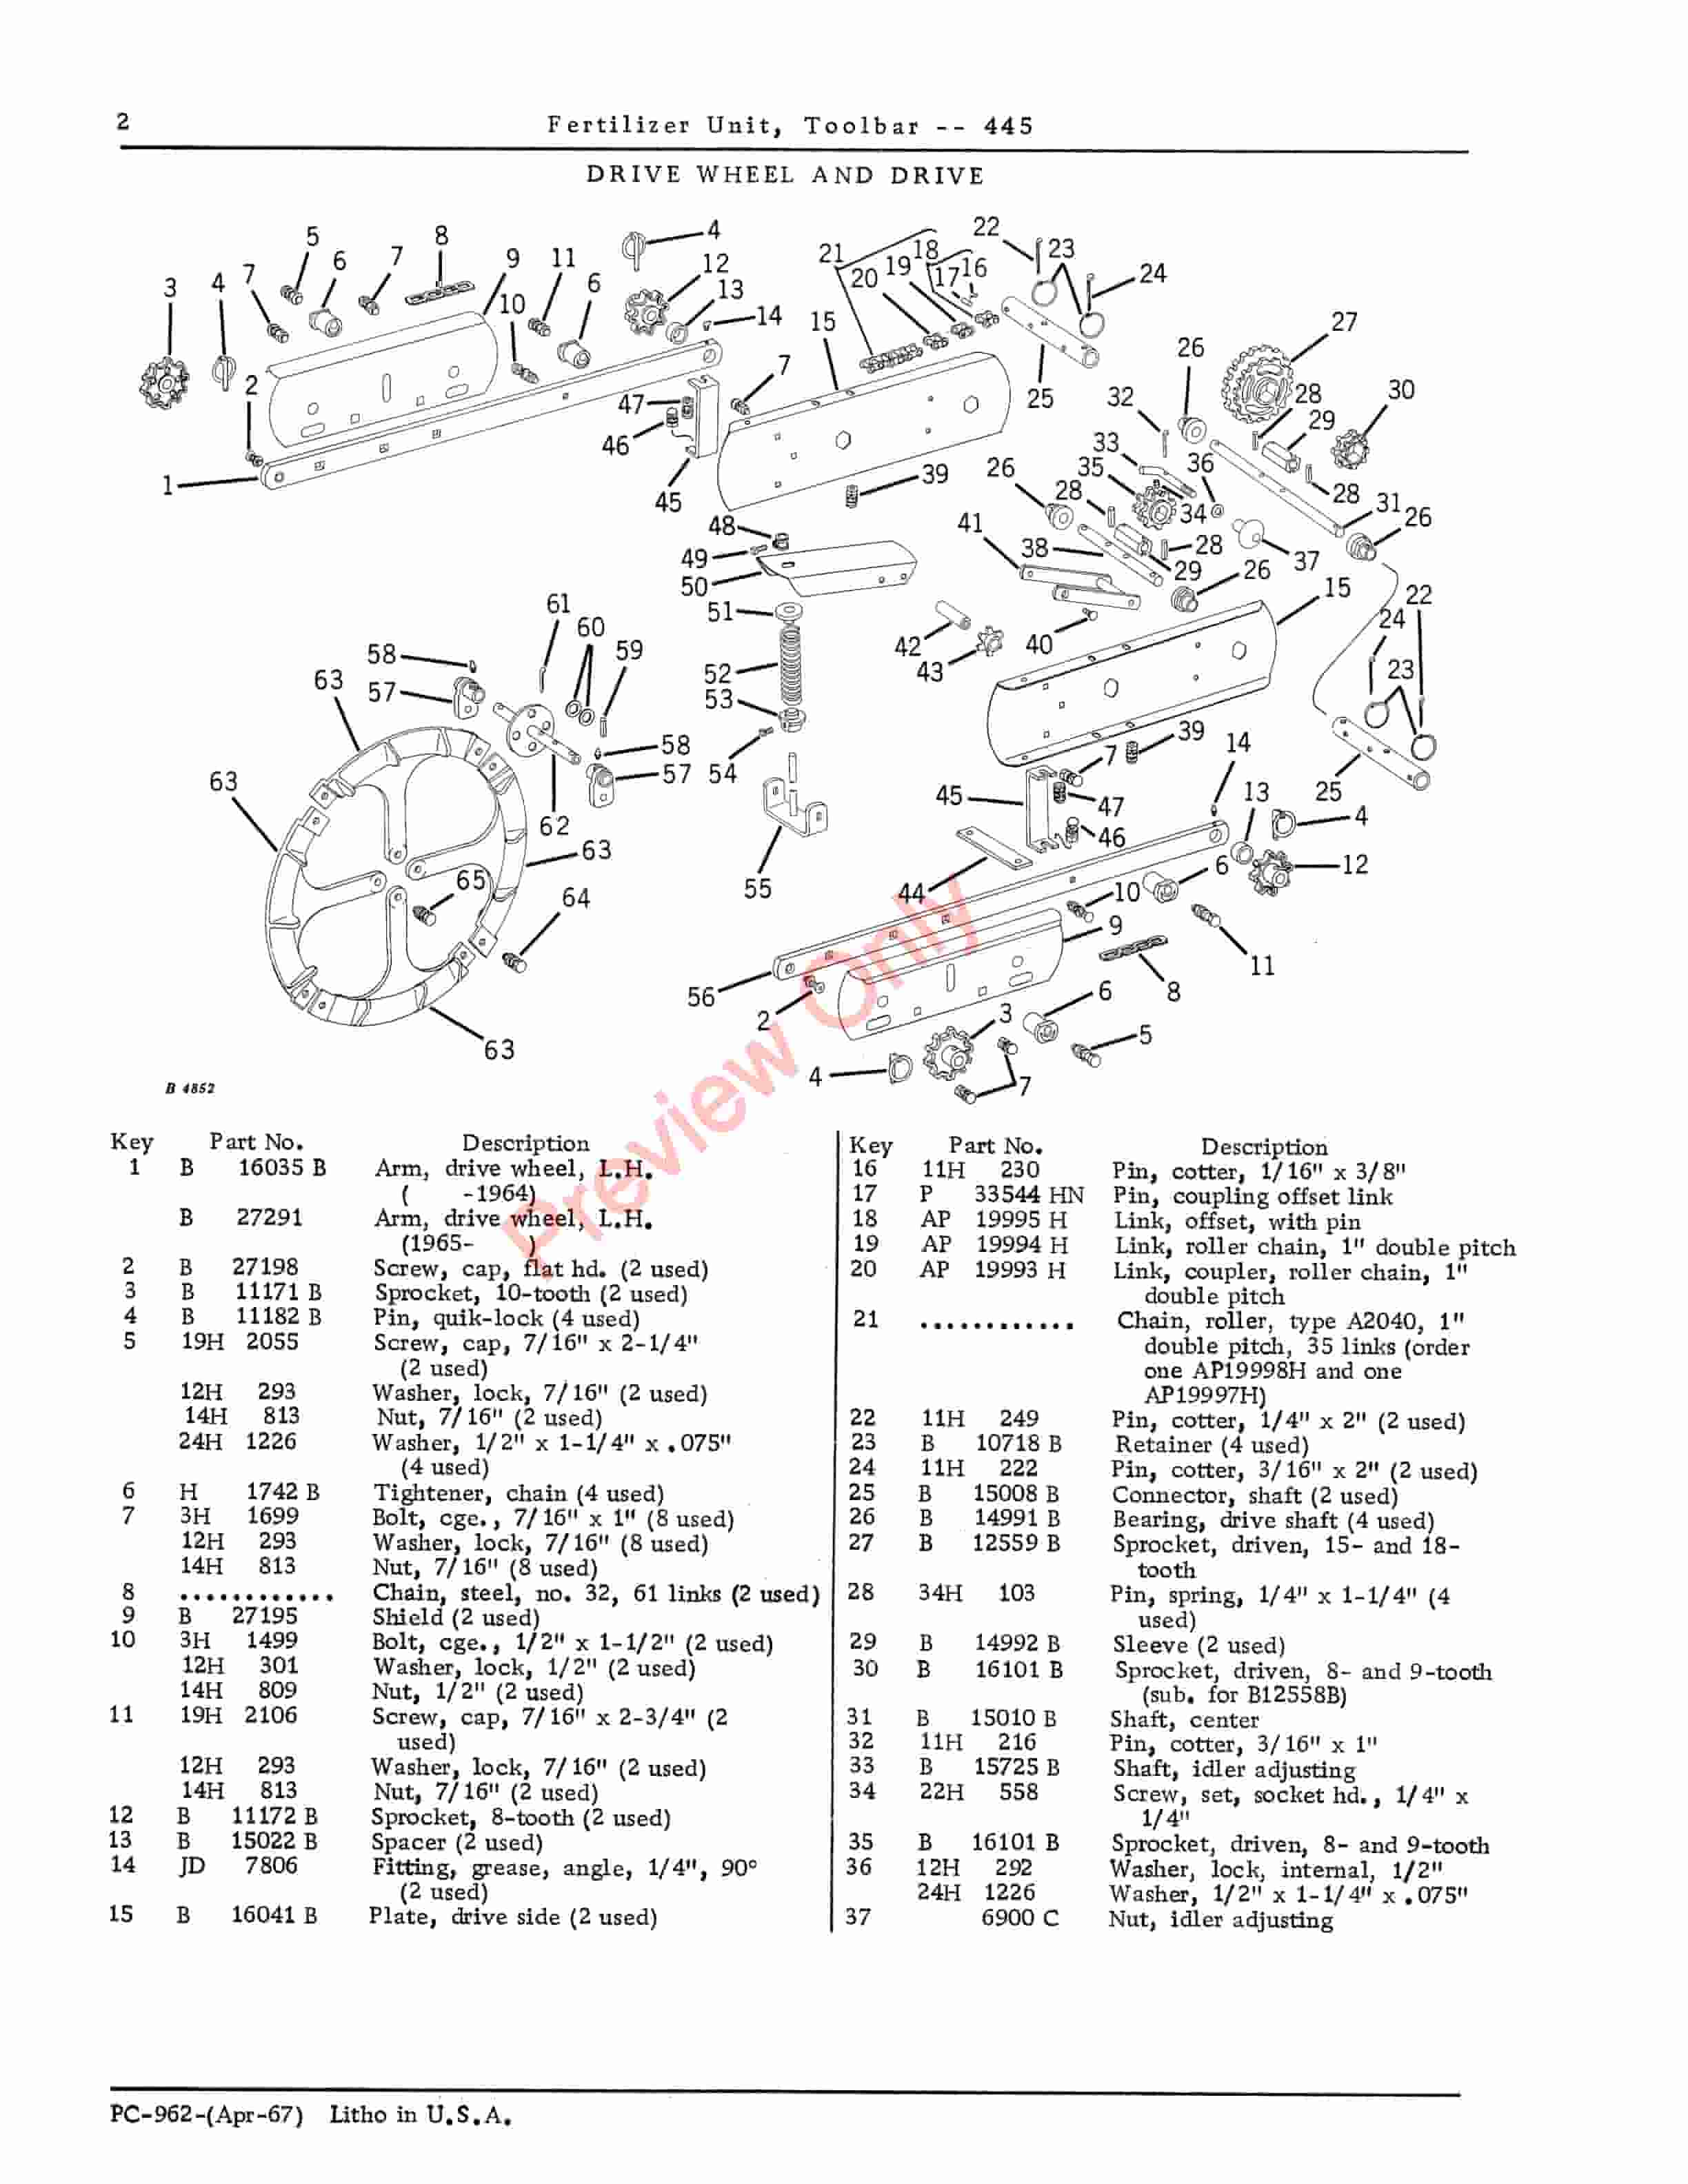 John Deere Toolbar Fertilizer Unit – 445 Parts Catalog PC962 01APR67-4